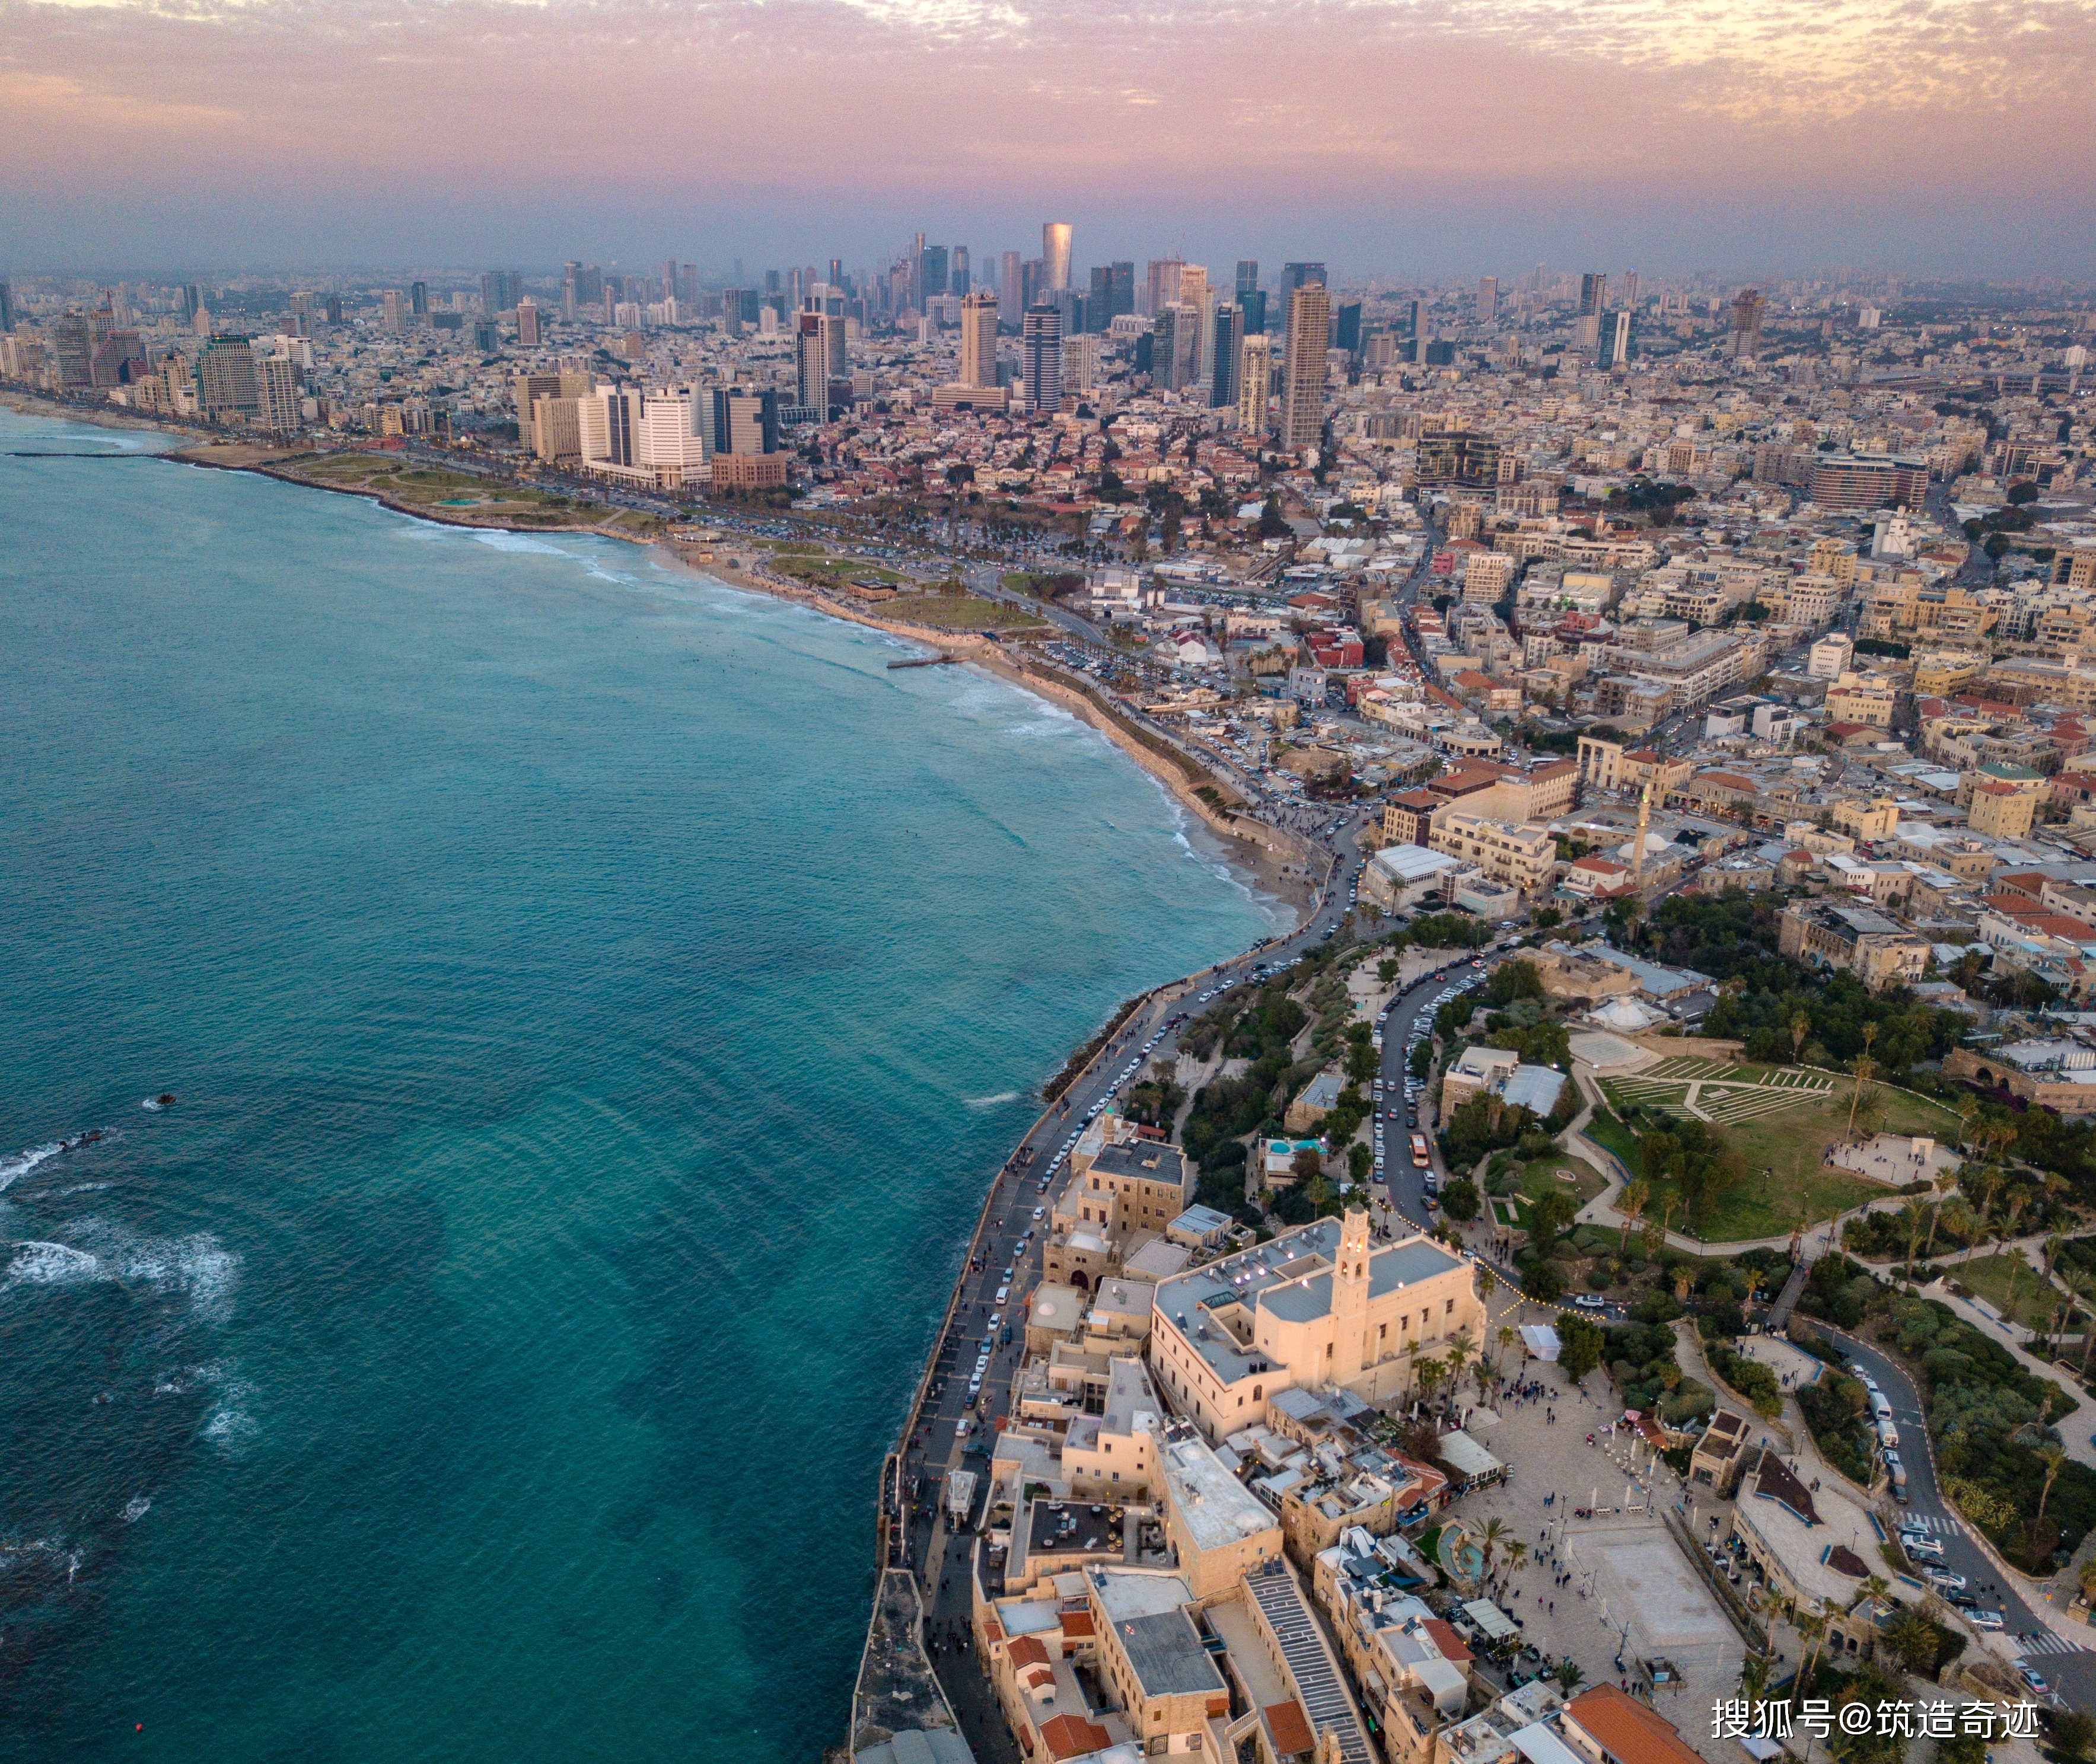 原创特拉维夫以色列最为繁华的一座城市算得上一线吗